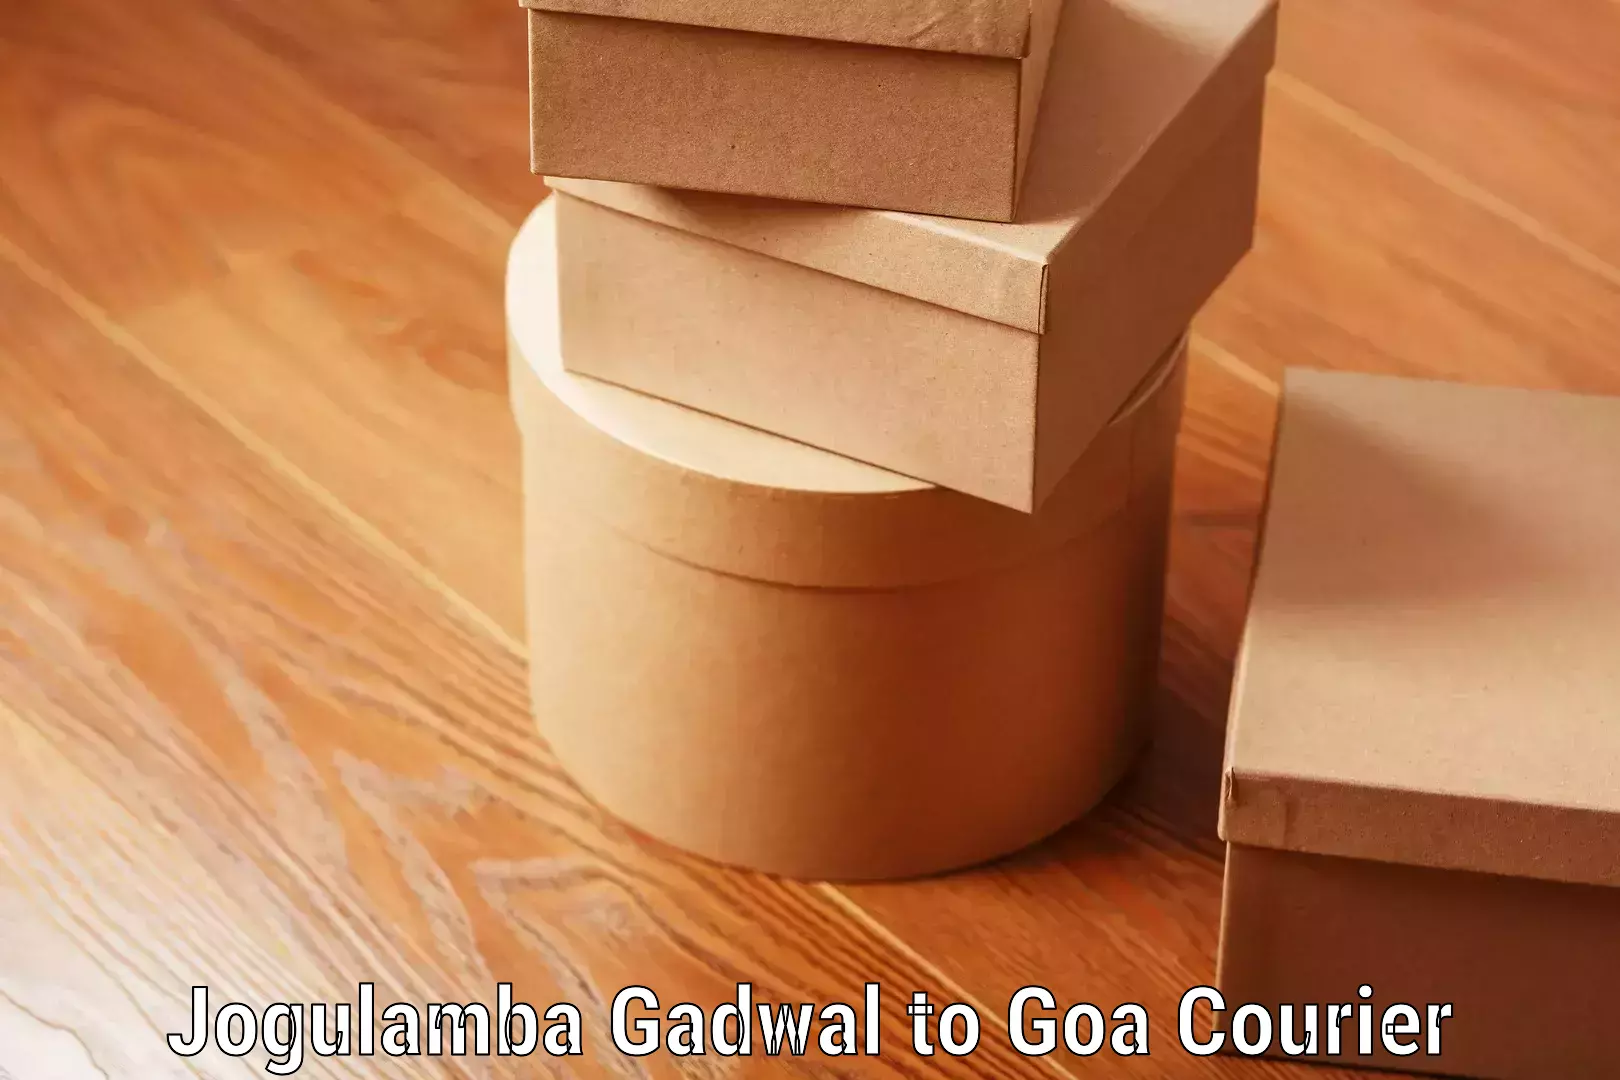 Express luggage delivery Jogulamba Gadwal to Goa